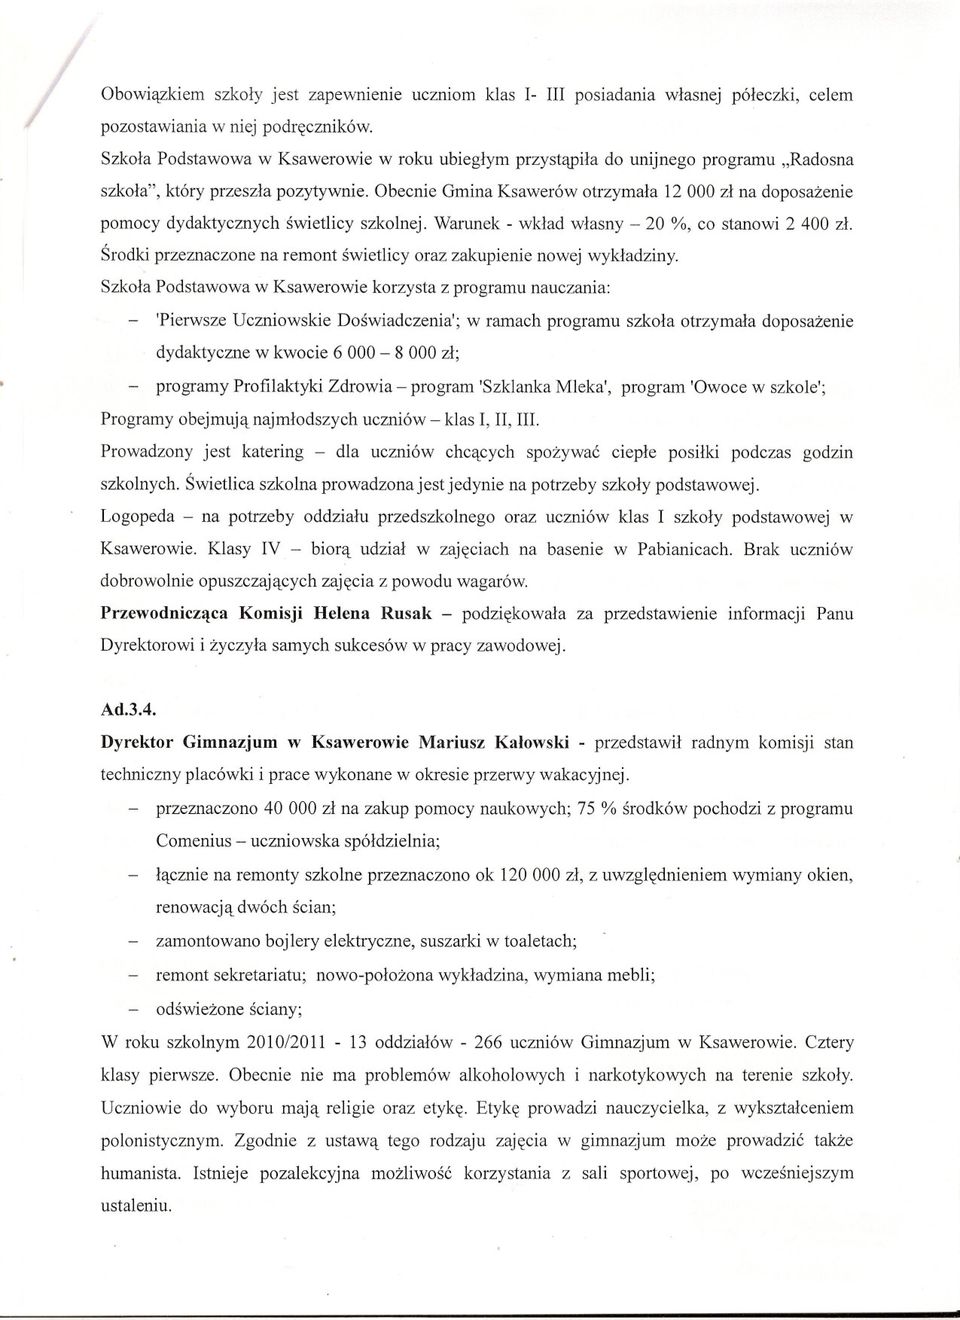 Obecnie Gmina Ksawerów otrzymala 12000 zl na doposazenie pomocy dydaktycznych swietlicy szkolnej. Warunek - wklad wlasny - 20 %, co stanowi 2 400 zl.